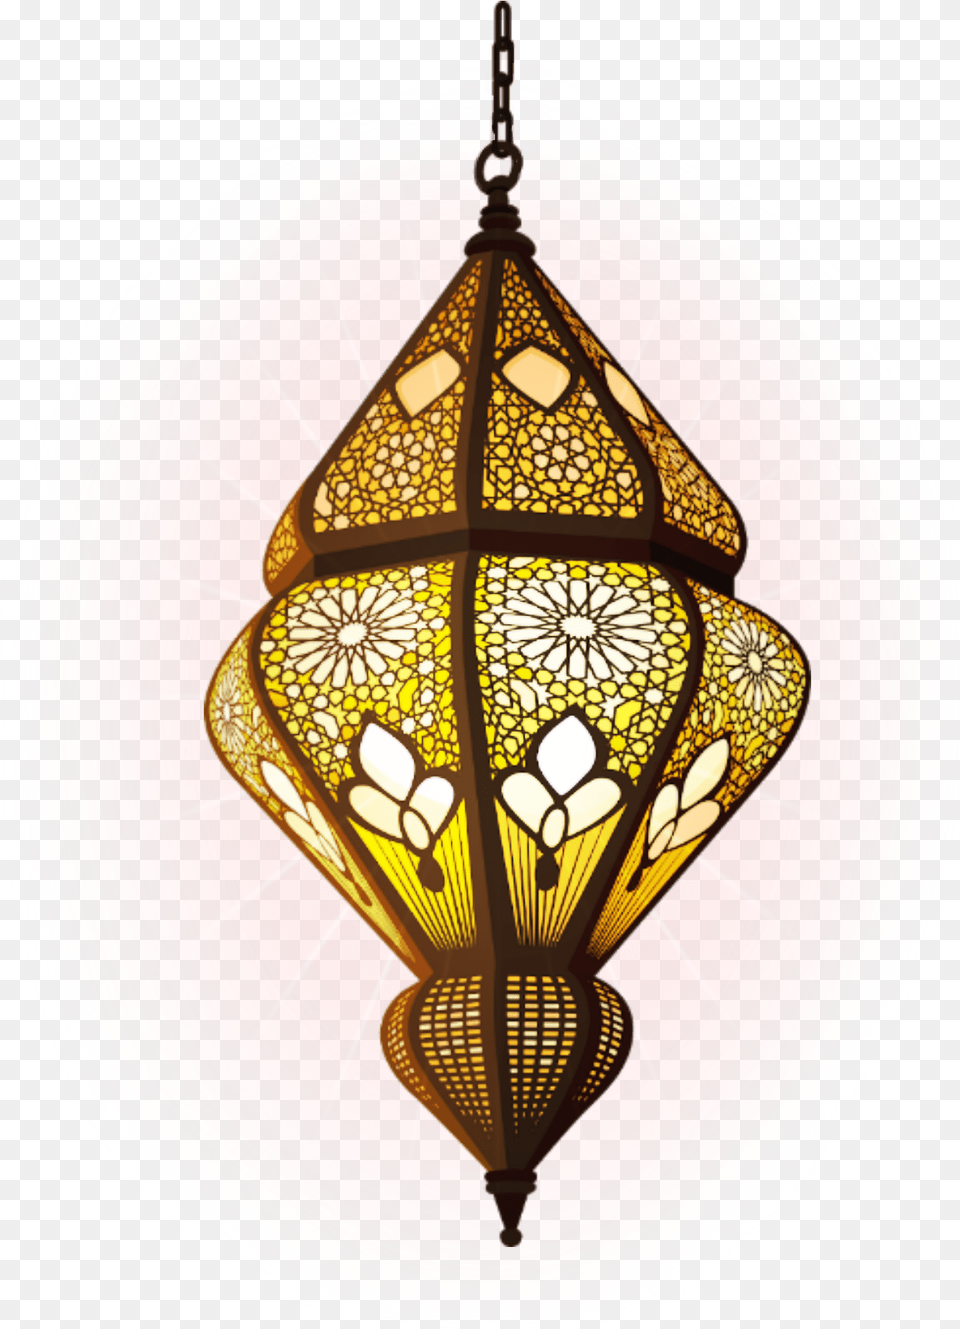 Lantern Light Lamp Hanging Suspension Boho Indian Islamic Lamp, Chandelier Png Image